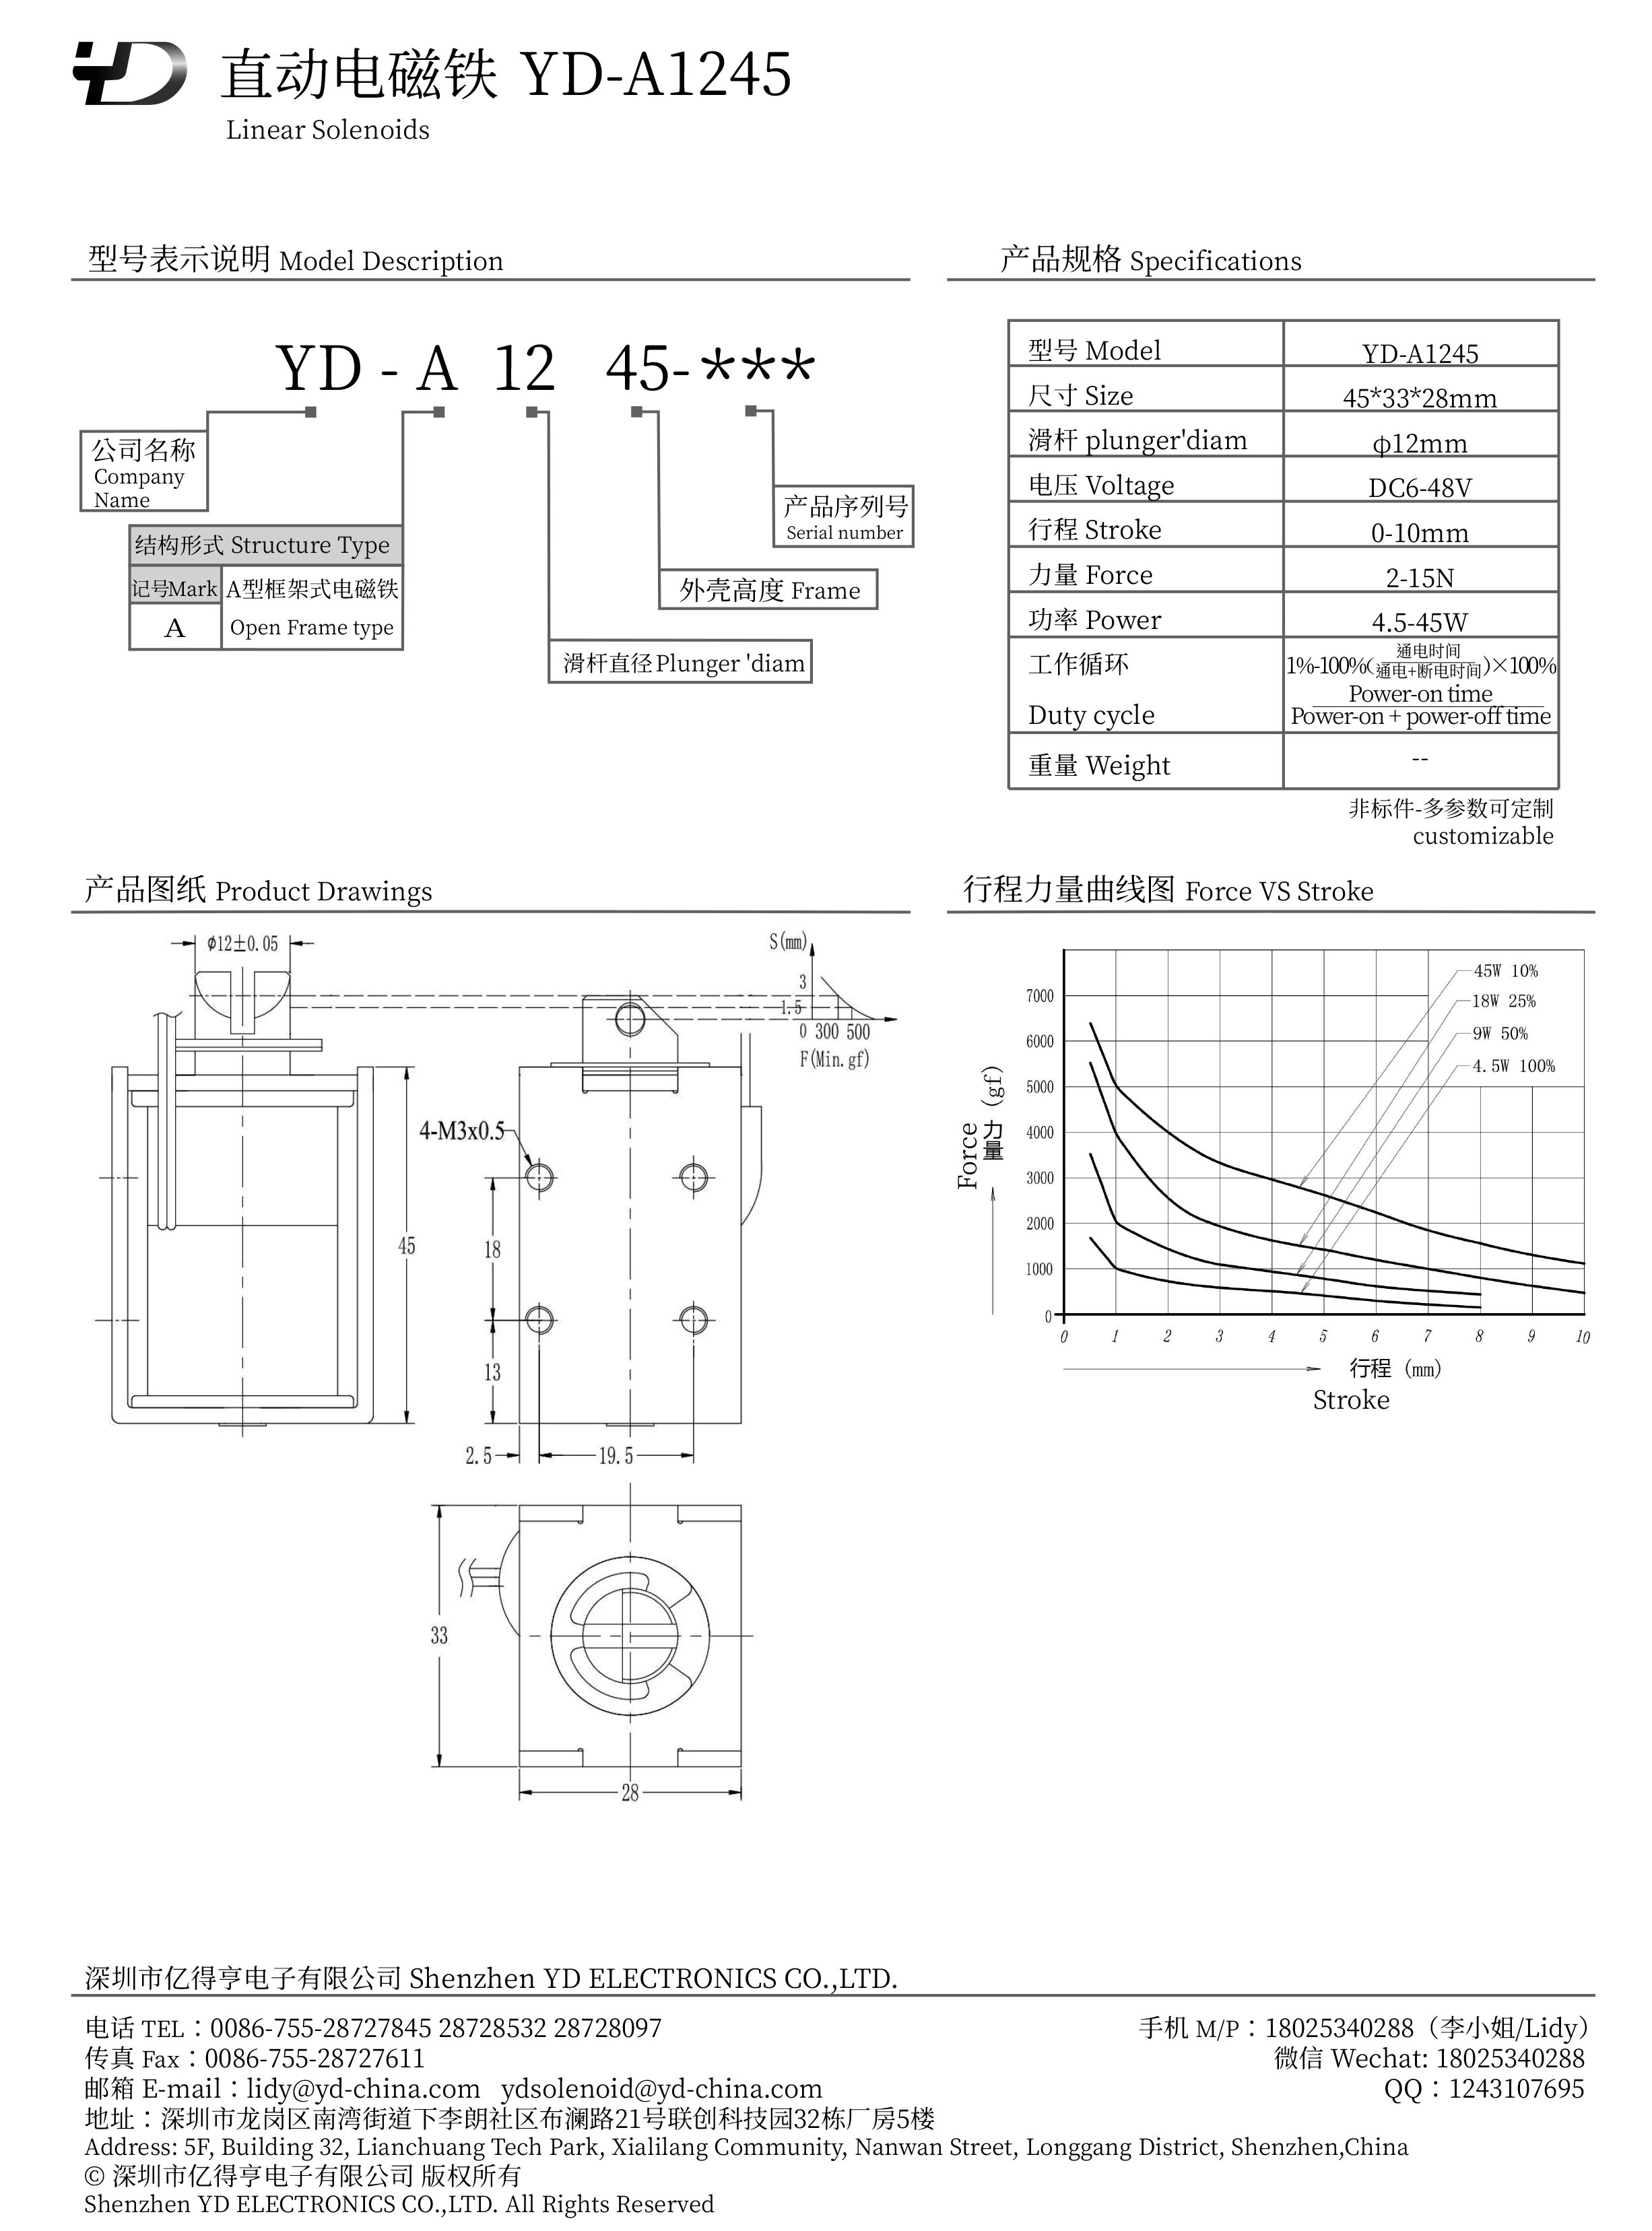 YD-A1245-PDF.jpg